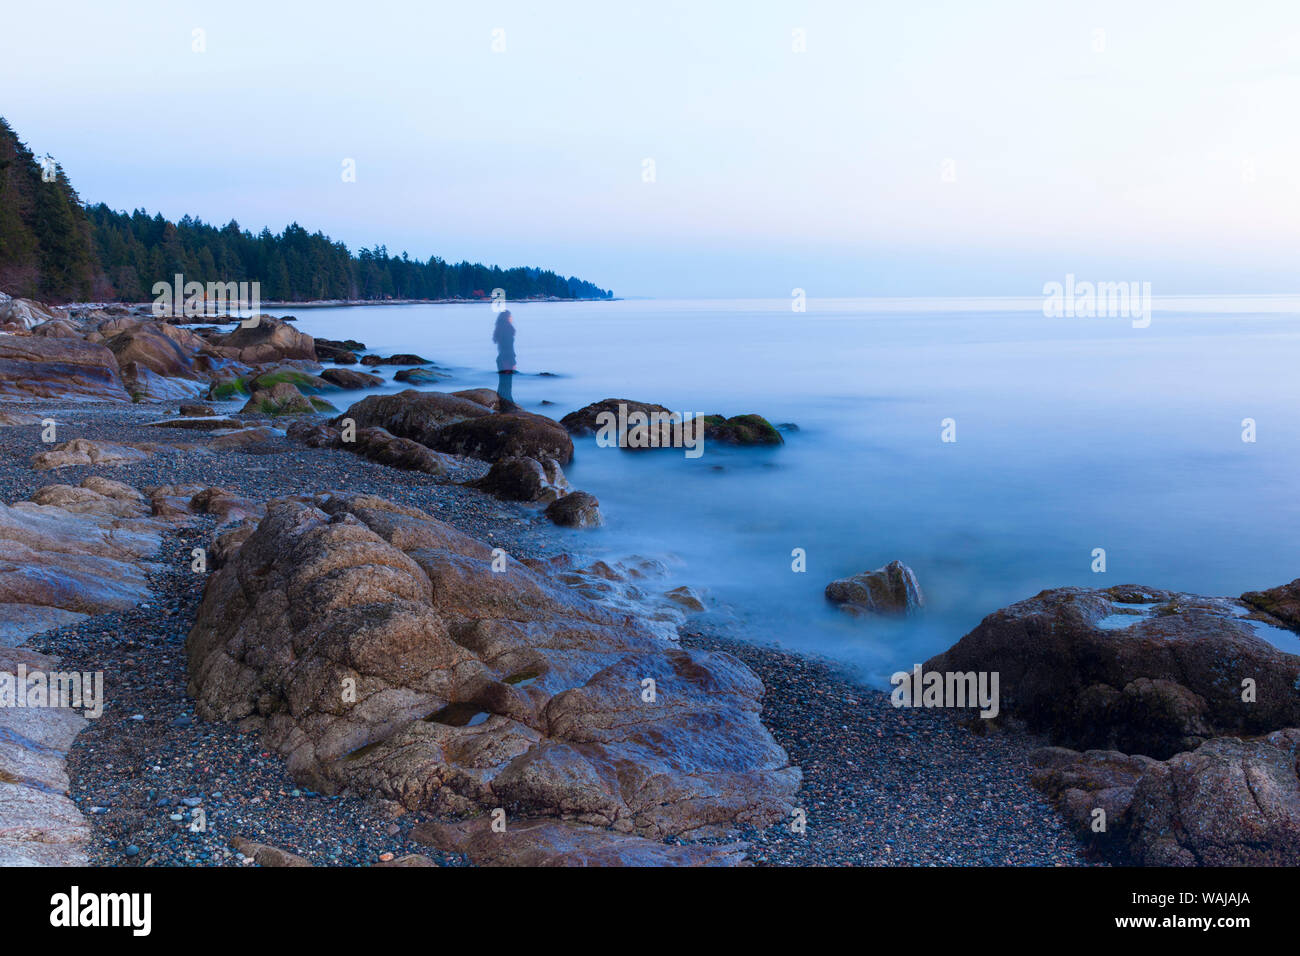 La larga exposición de una imagen transparente de mujer en la playa en Sechelt, British Columbia, Canadá Foto de stock